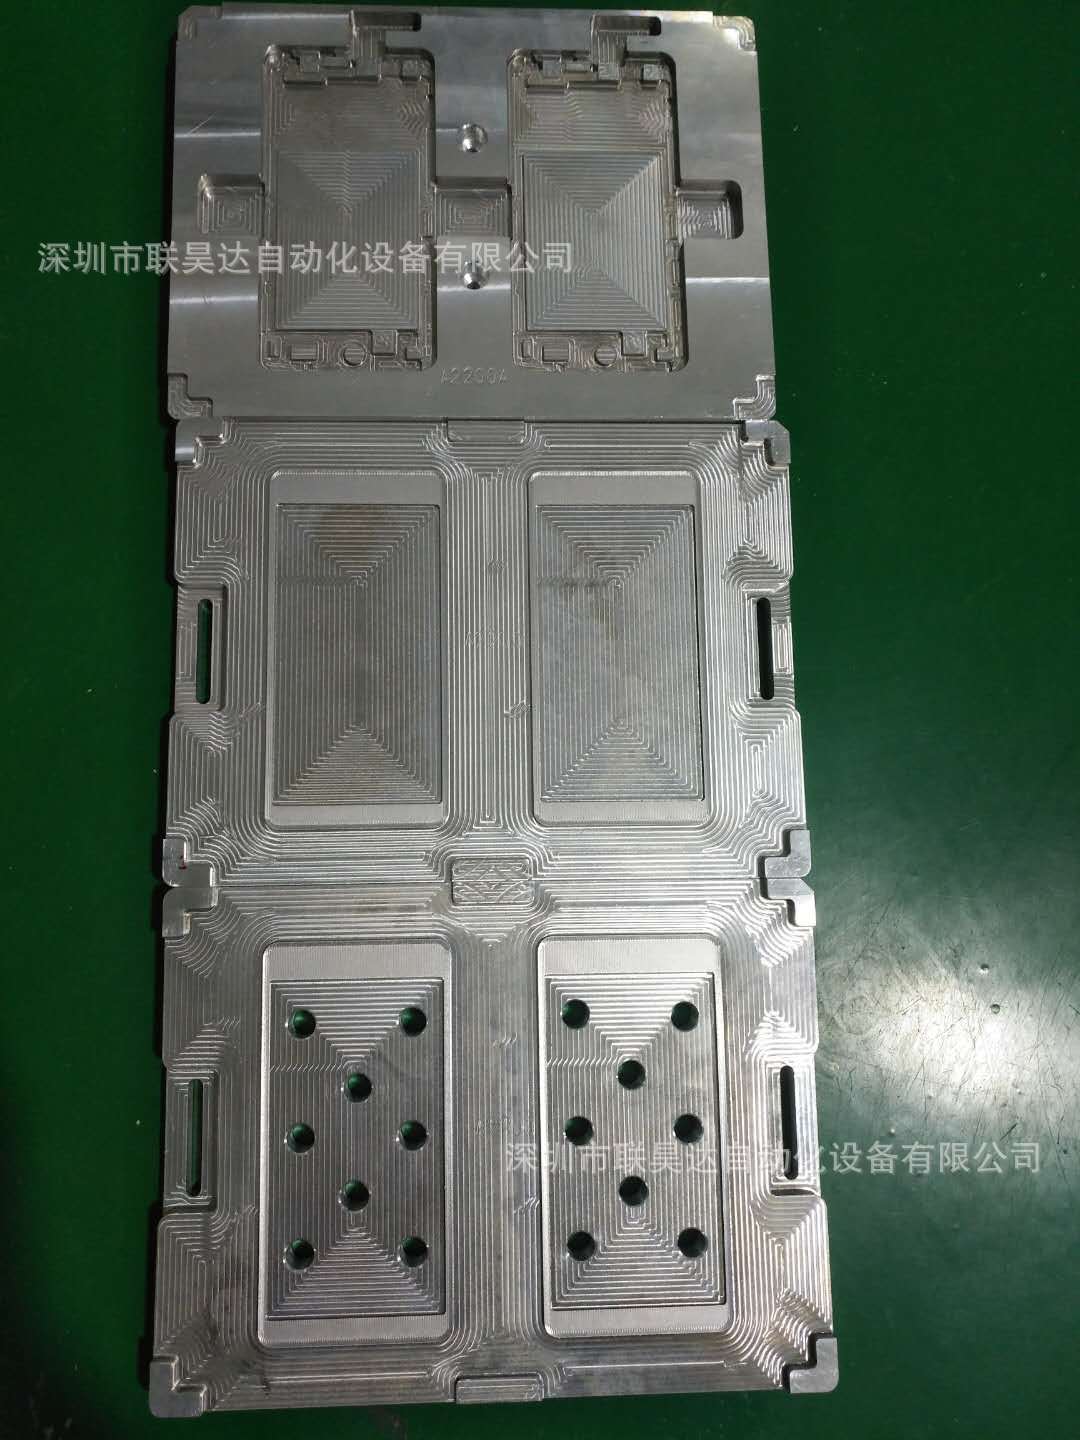 深圳市联昊达自动化设备有限公司